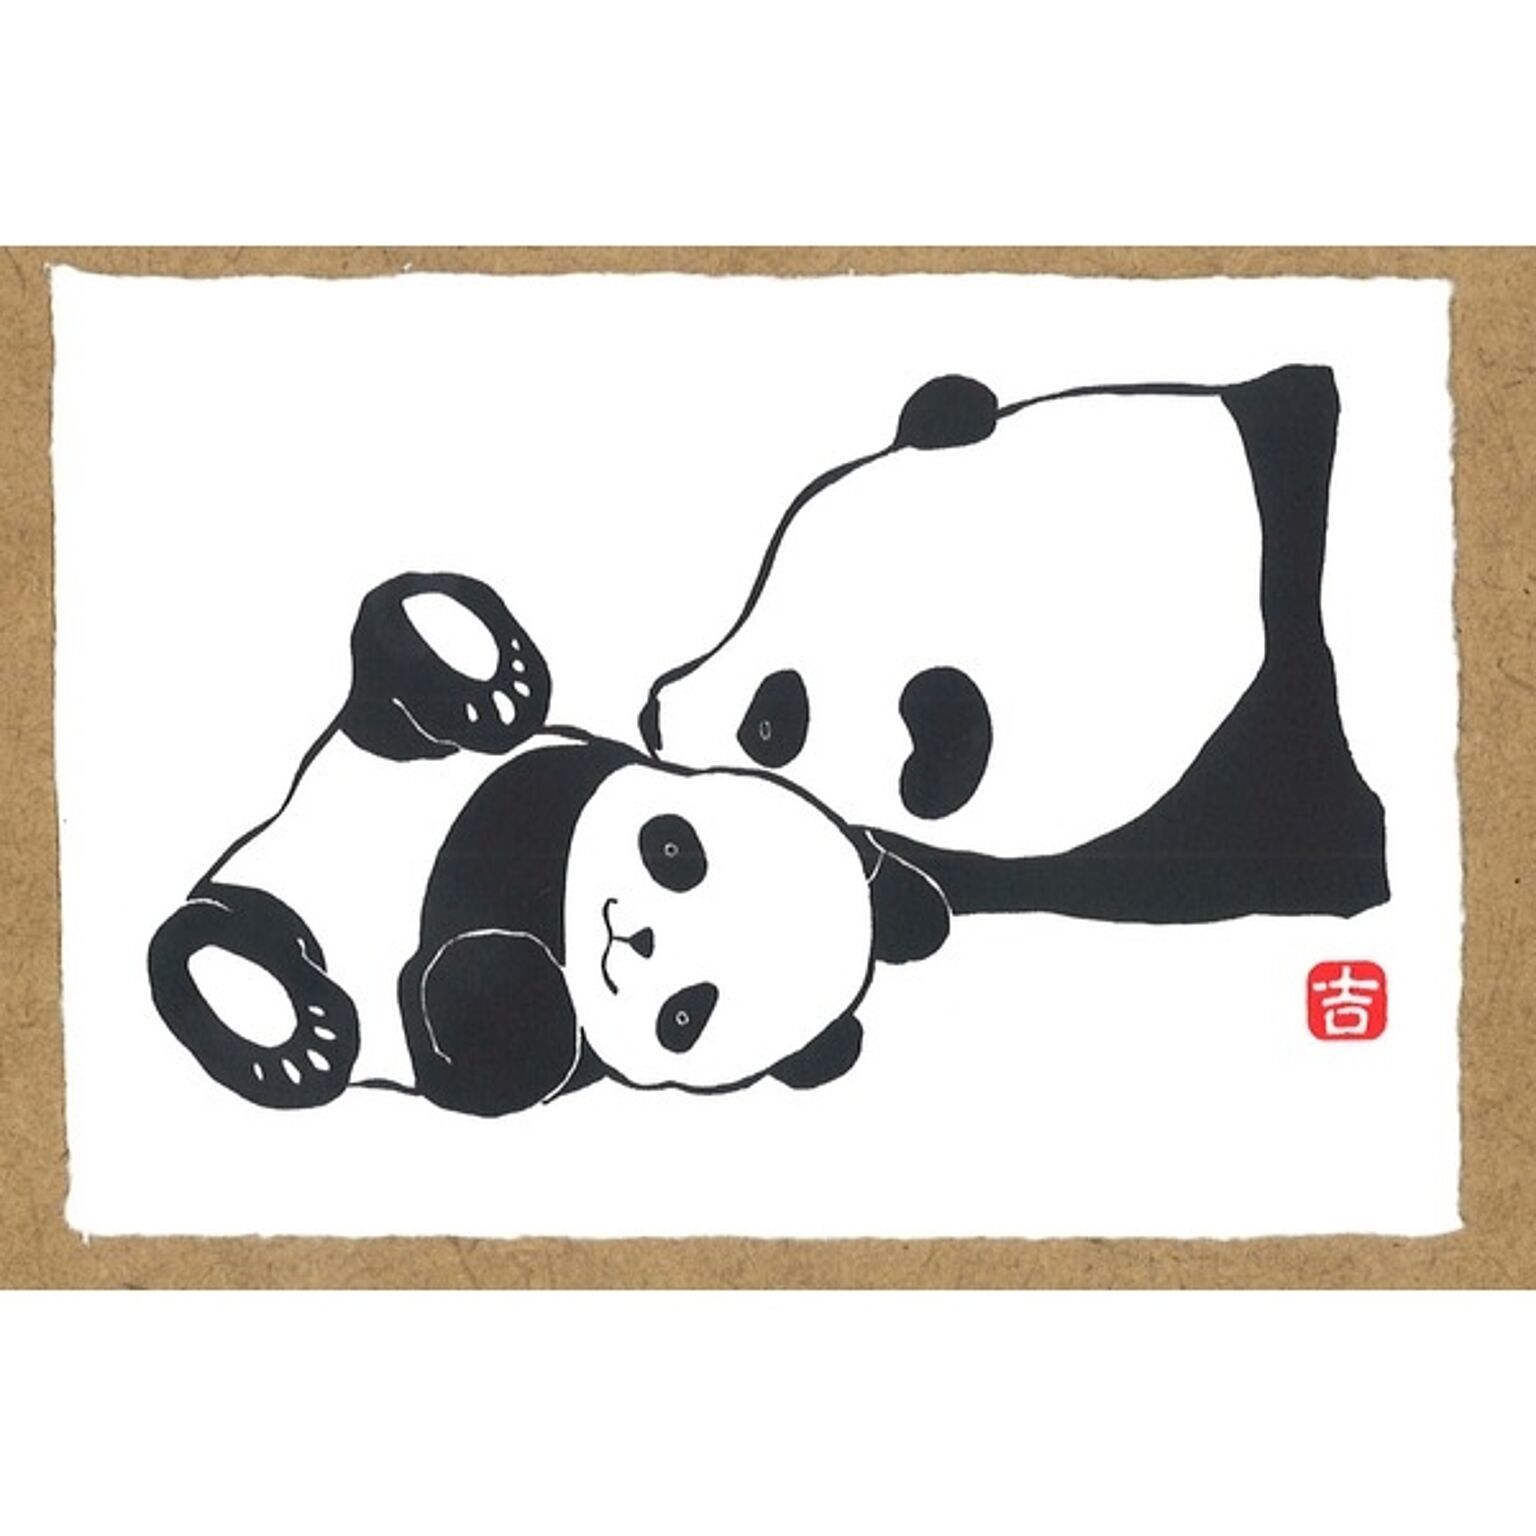 【越前和紙】パンダの絵ハガキ・和紙パンダ・パンダの版画 ■吉岡浩太郎シルク版画絵葉書「パンダ」10枚入り(うれしいな)